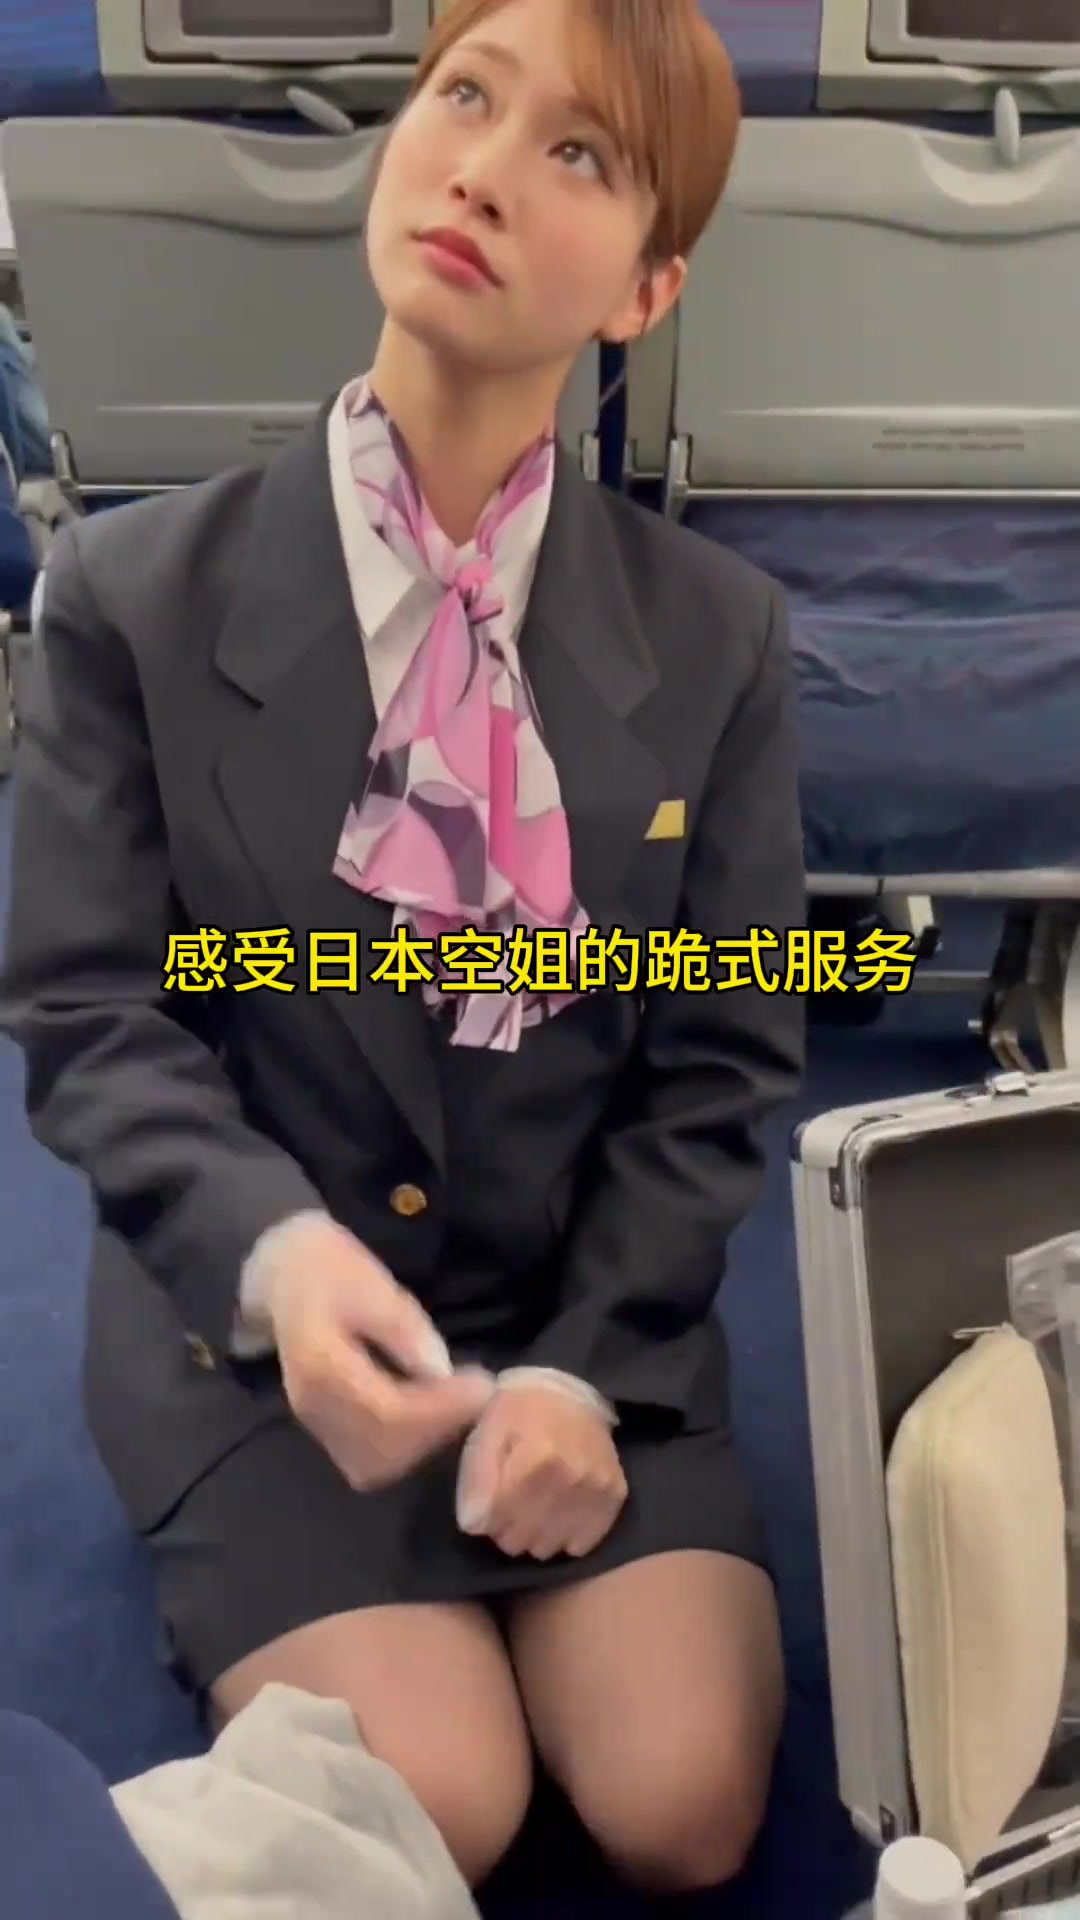 日本空姐幽默回应乘客换座请求 - 2018年11月14日, 俄罗斯卫星通讯社